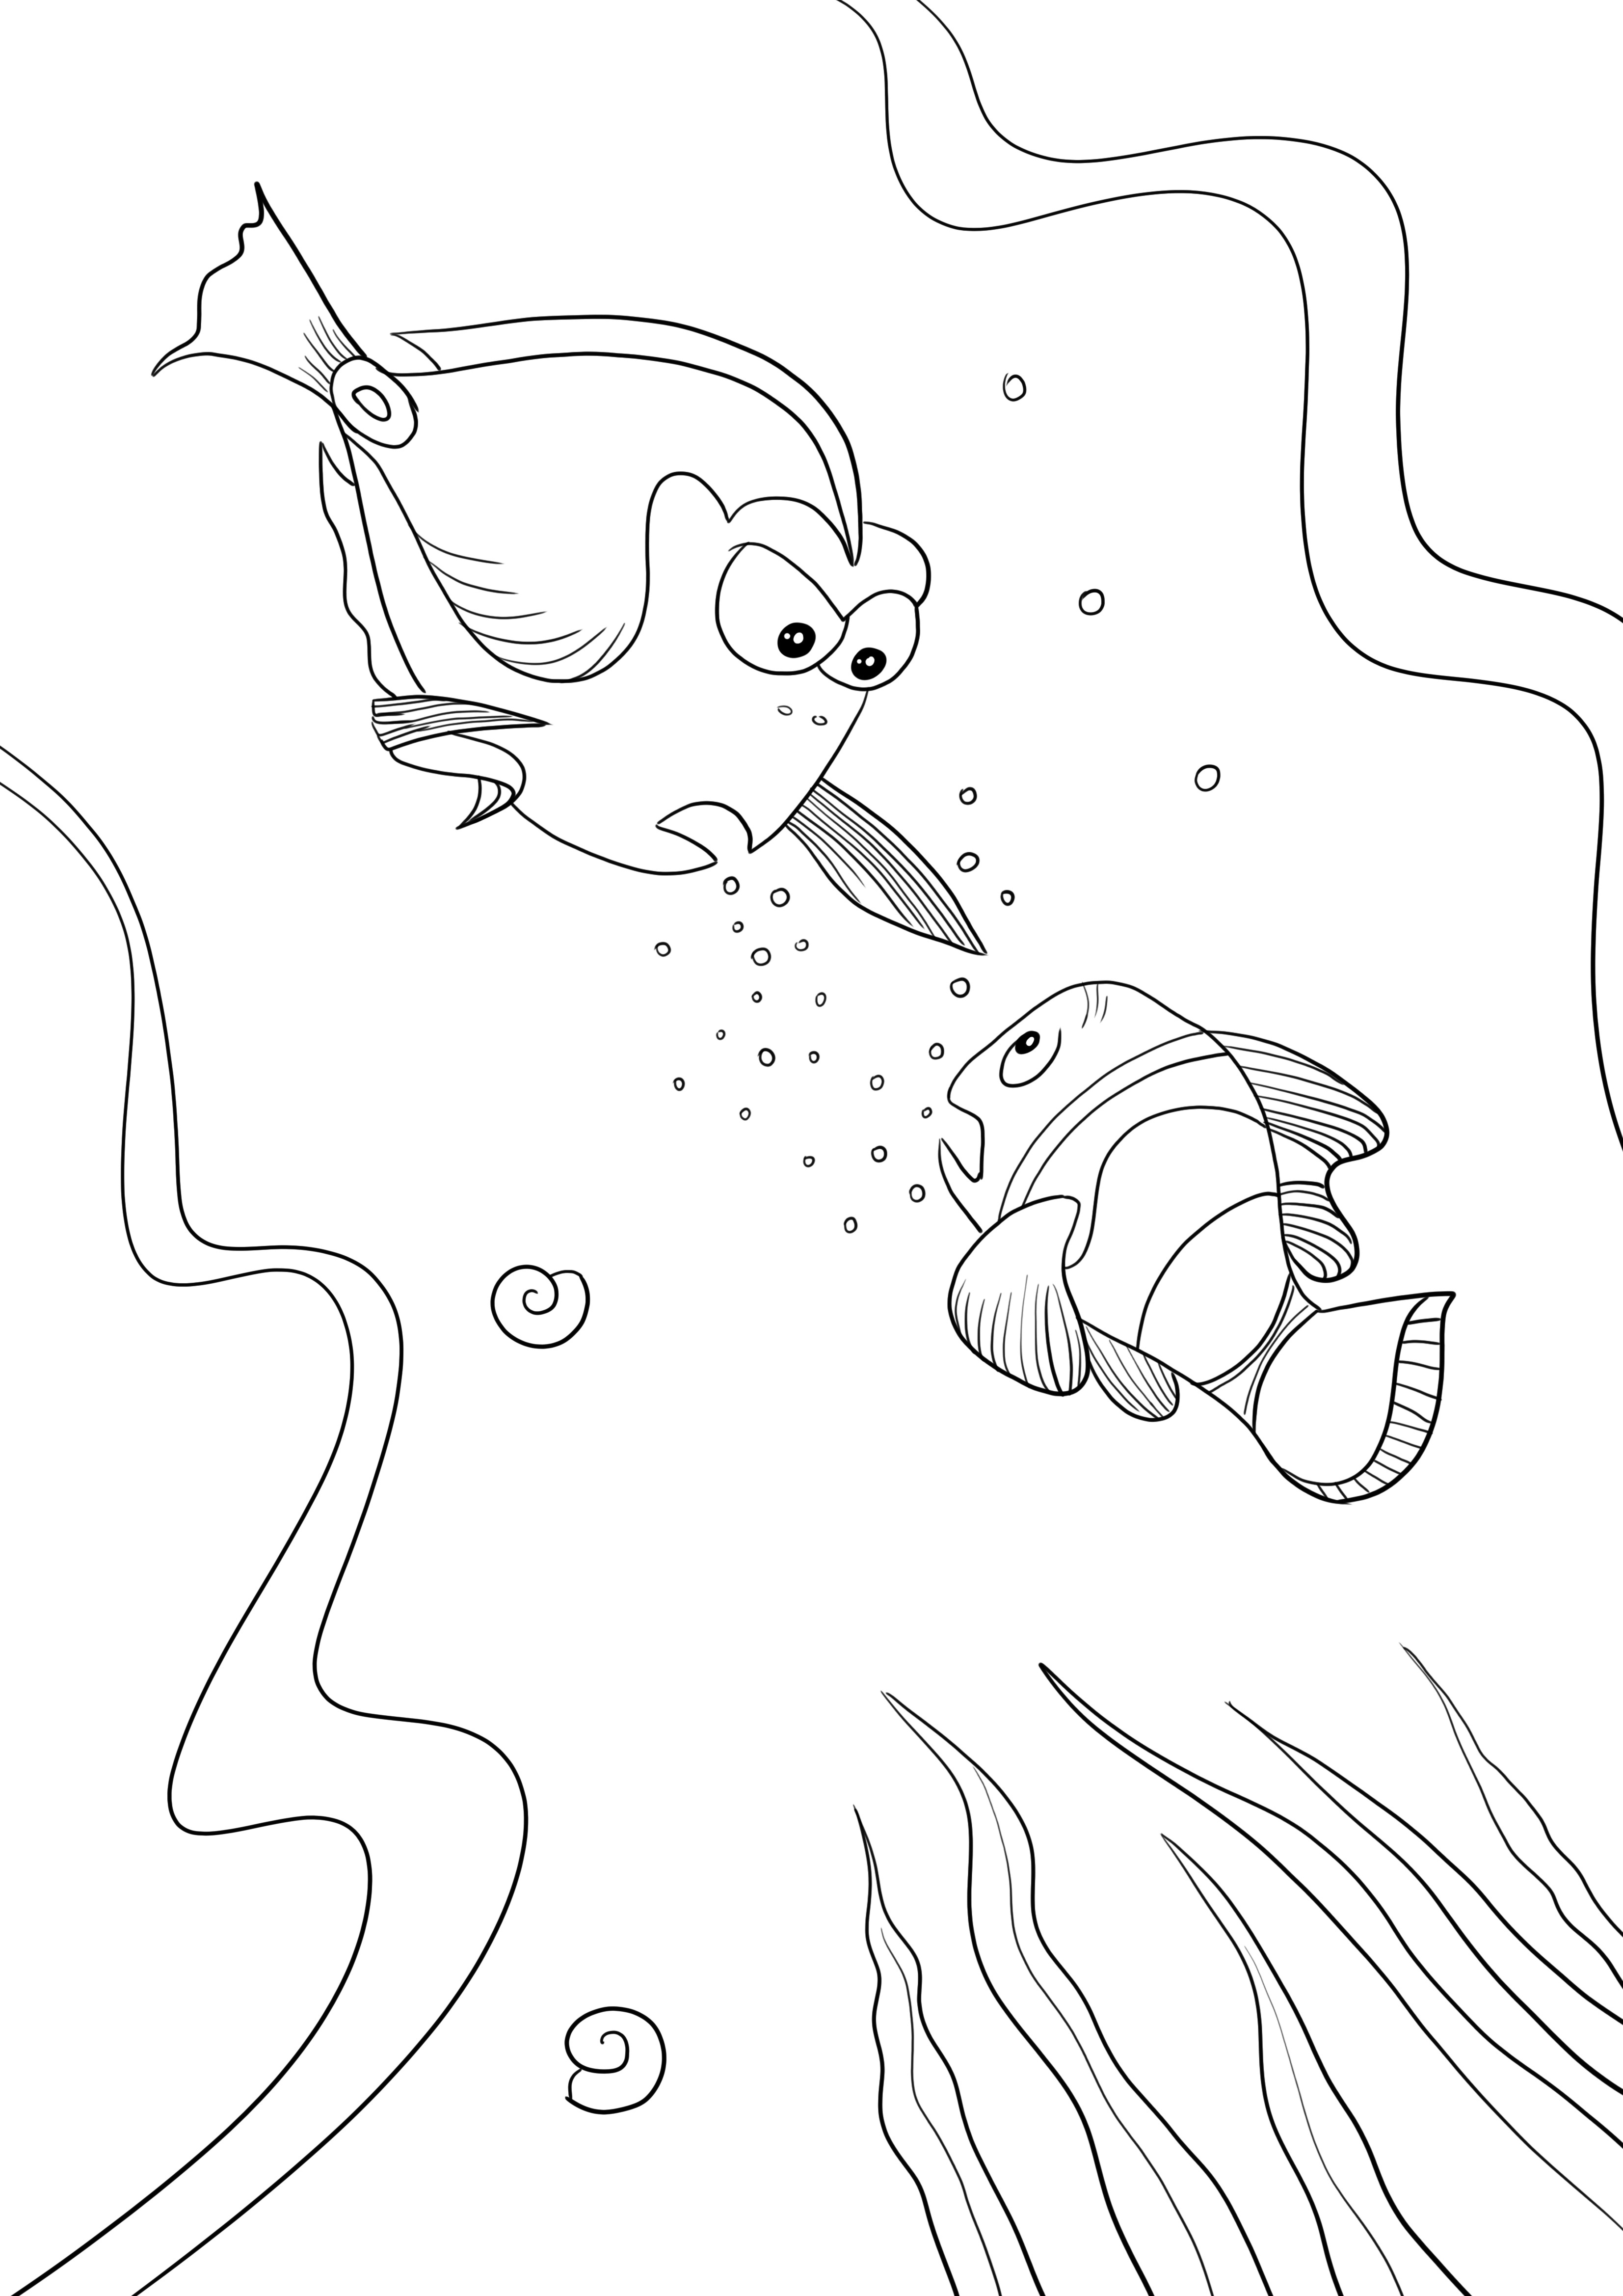 Dory z Finding Nemo do wydrukowania obrazka do pokolorowania dla dzieci